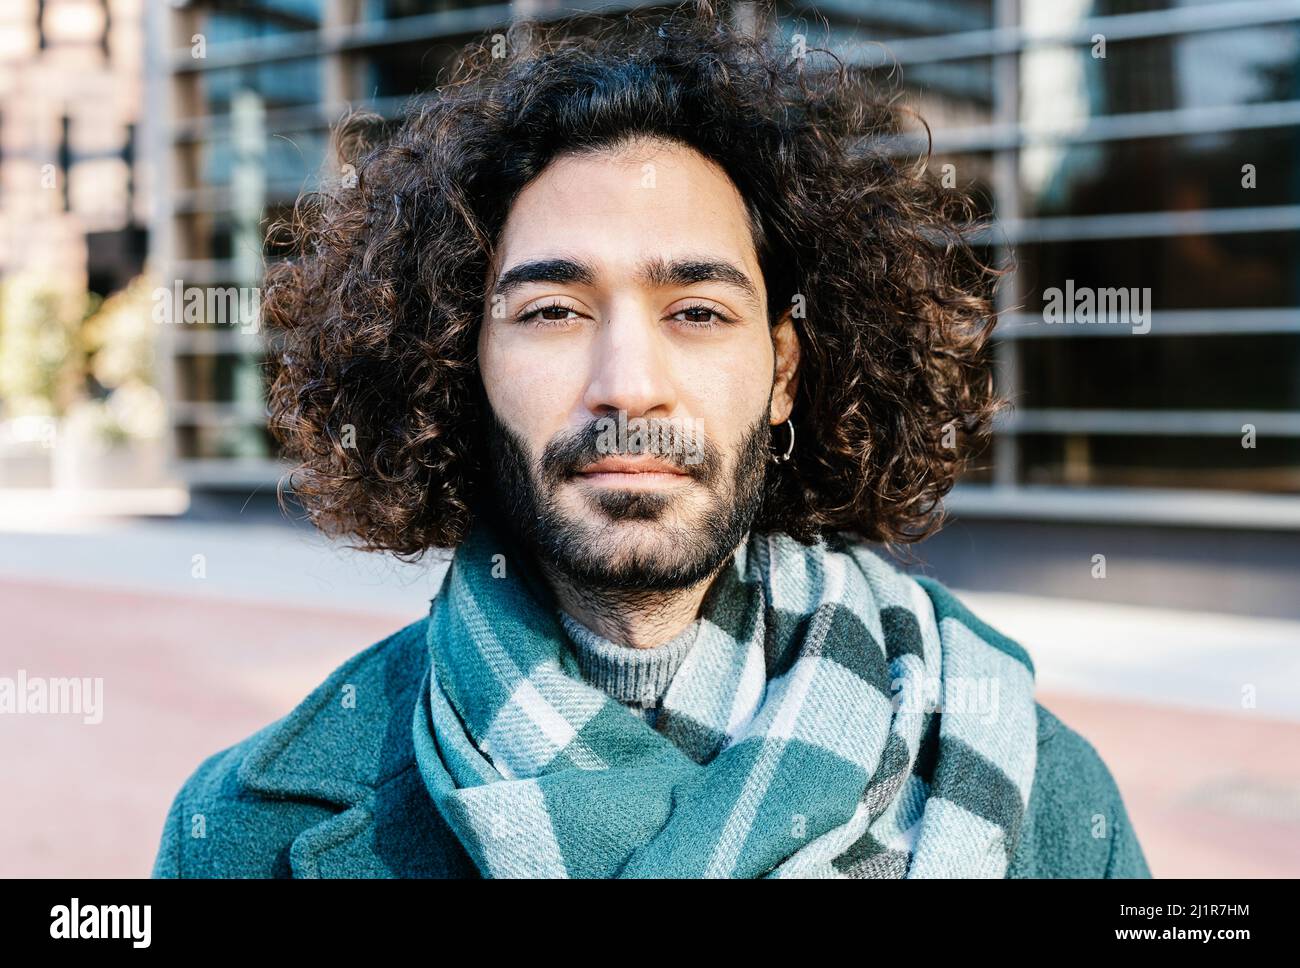 Stadtportrait des jungen lockigen Mannes mit Bart auf der Straße posiert Stockfoto